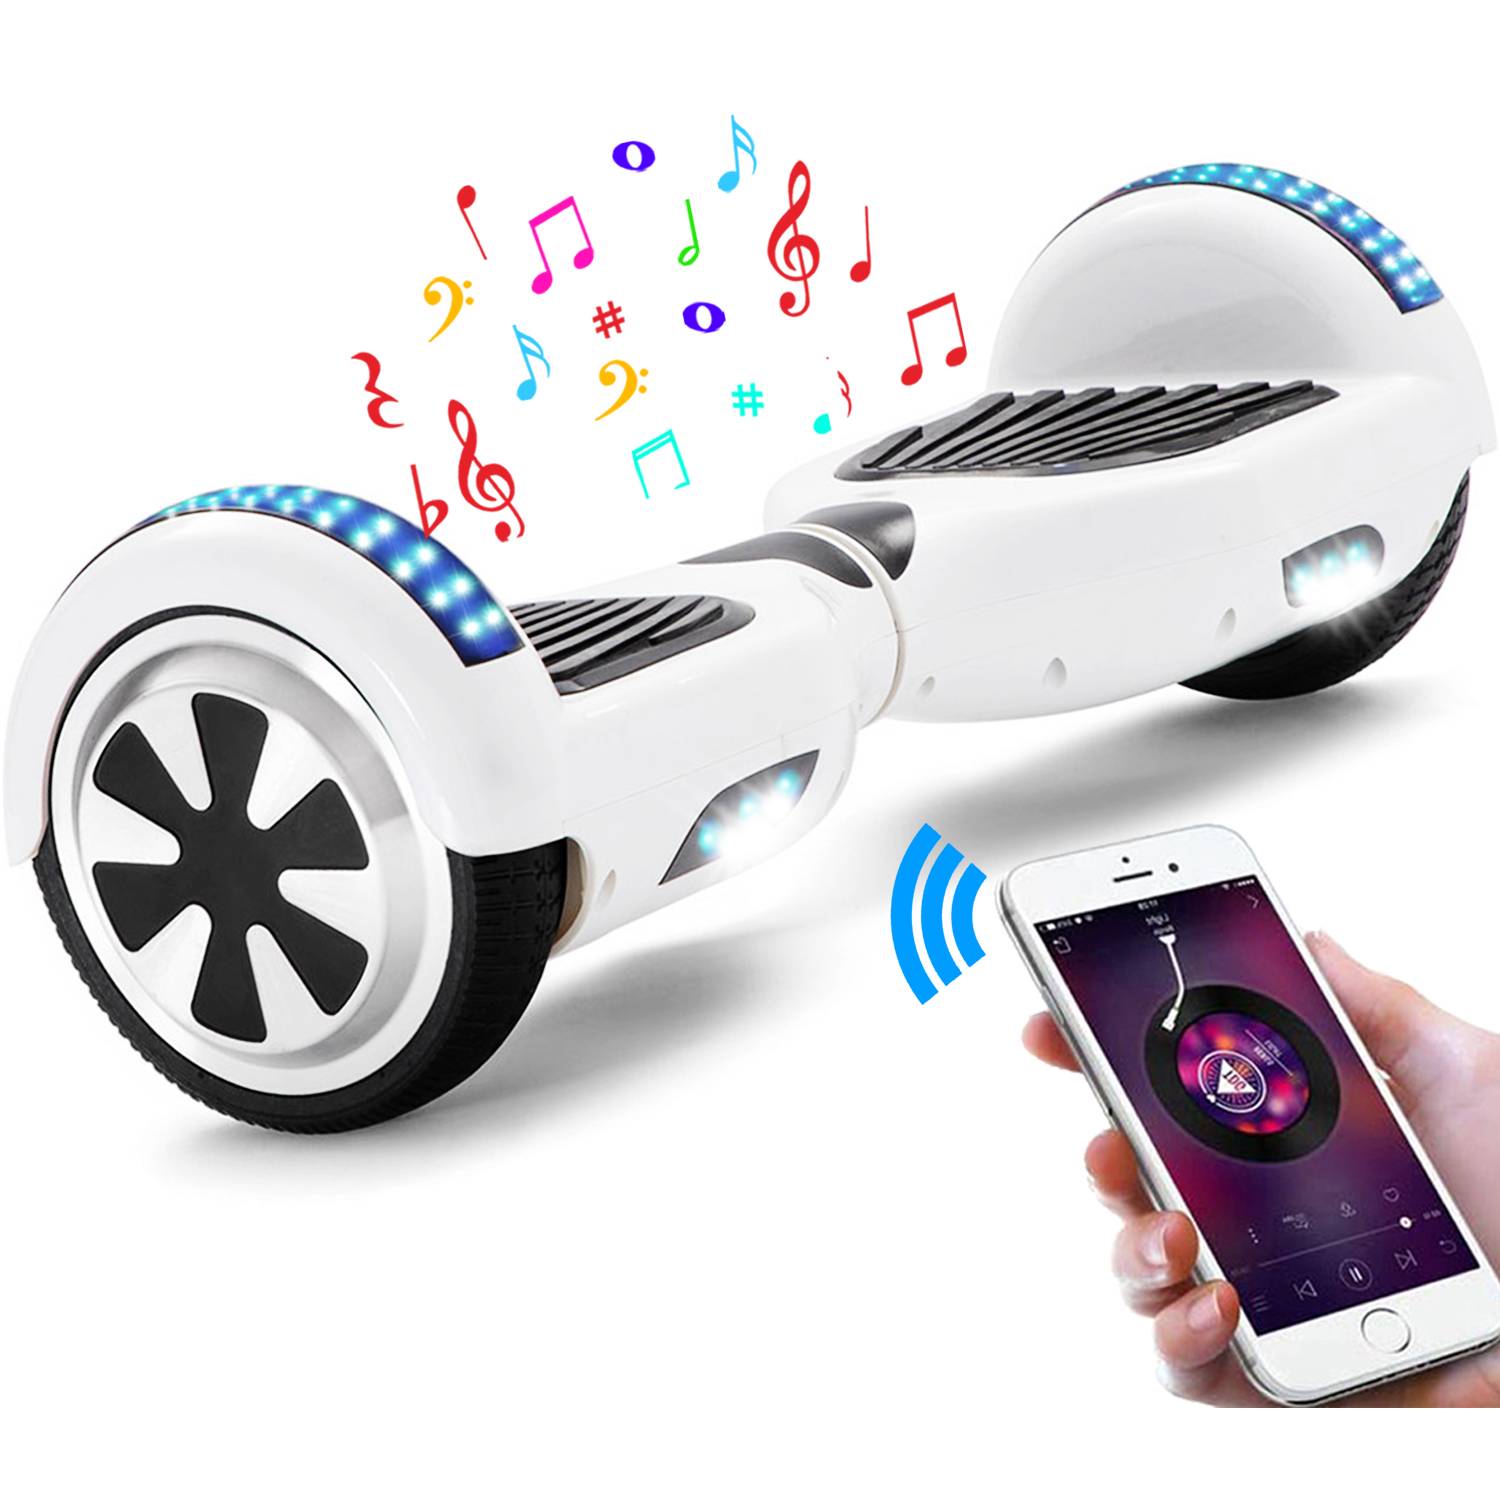 Neues 6,5" Hoverboard weiß mit Bluetooth Musik Lautsprecher und LED Licht - 500W 12km/h